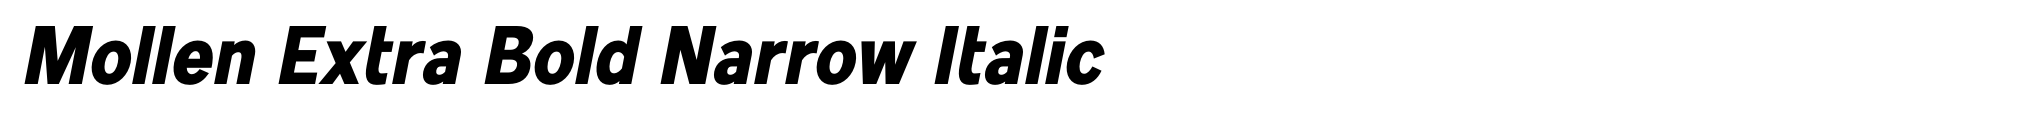 Mollen Extra Bold Narrow Italic image